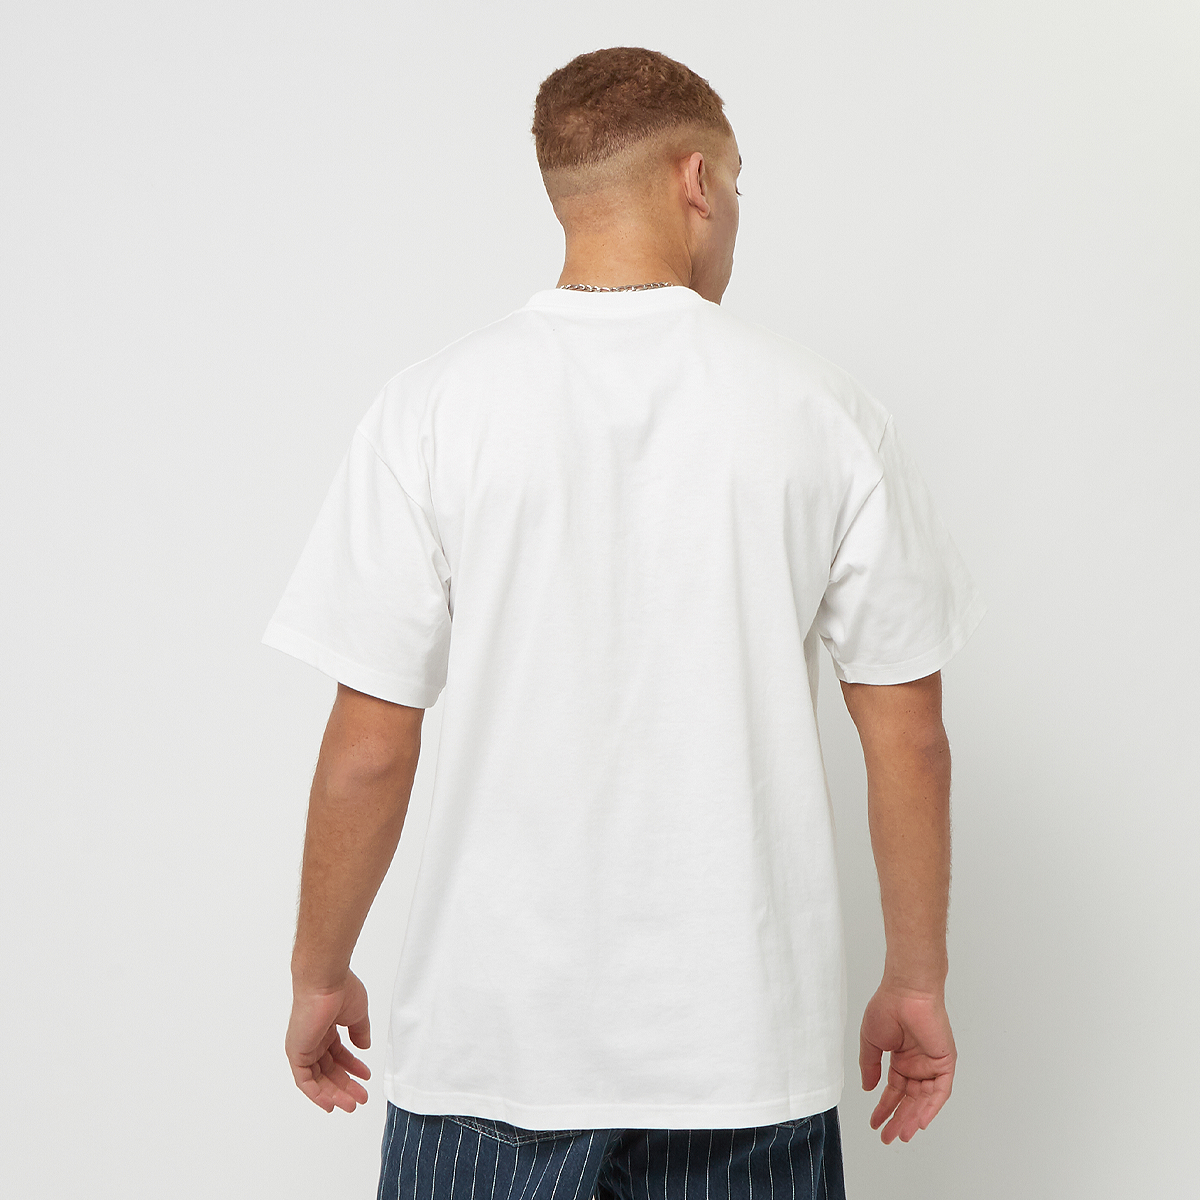 Carhartt WIP Shortsleeve Onyx T-shirt T-shirts Heren White black maat: S beschikbare maaten:S M XL